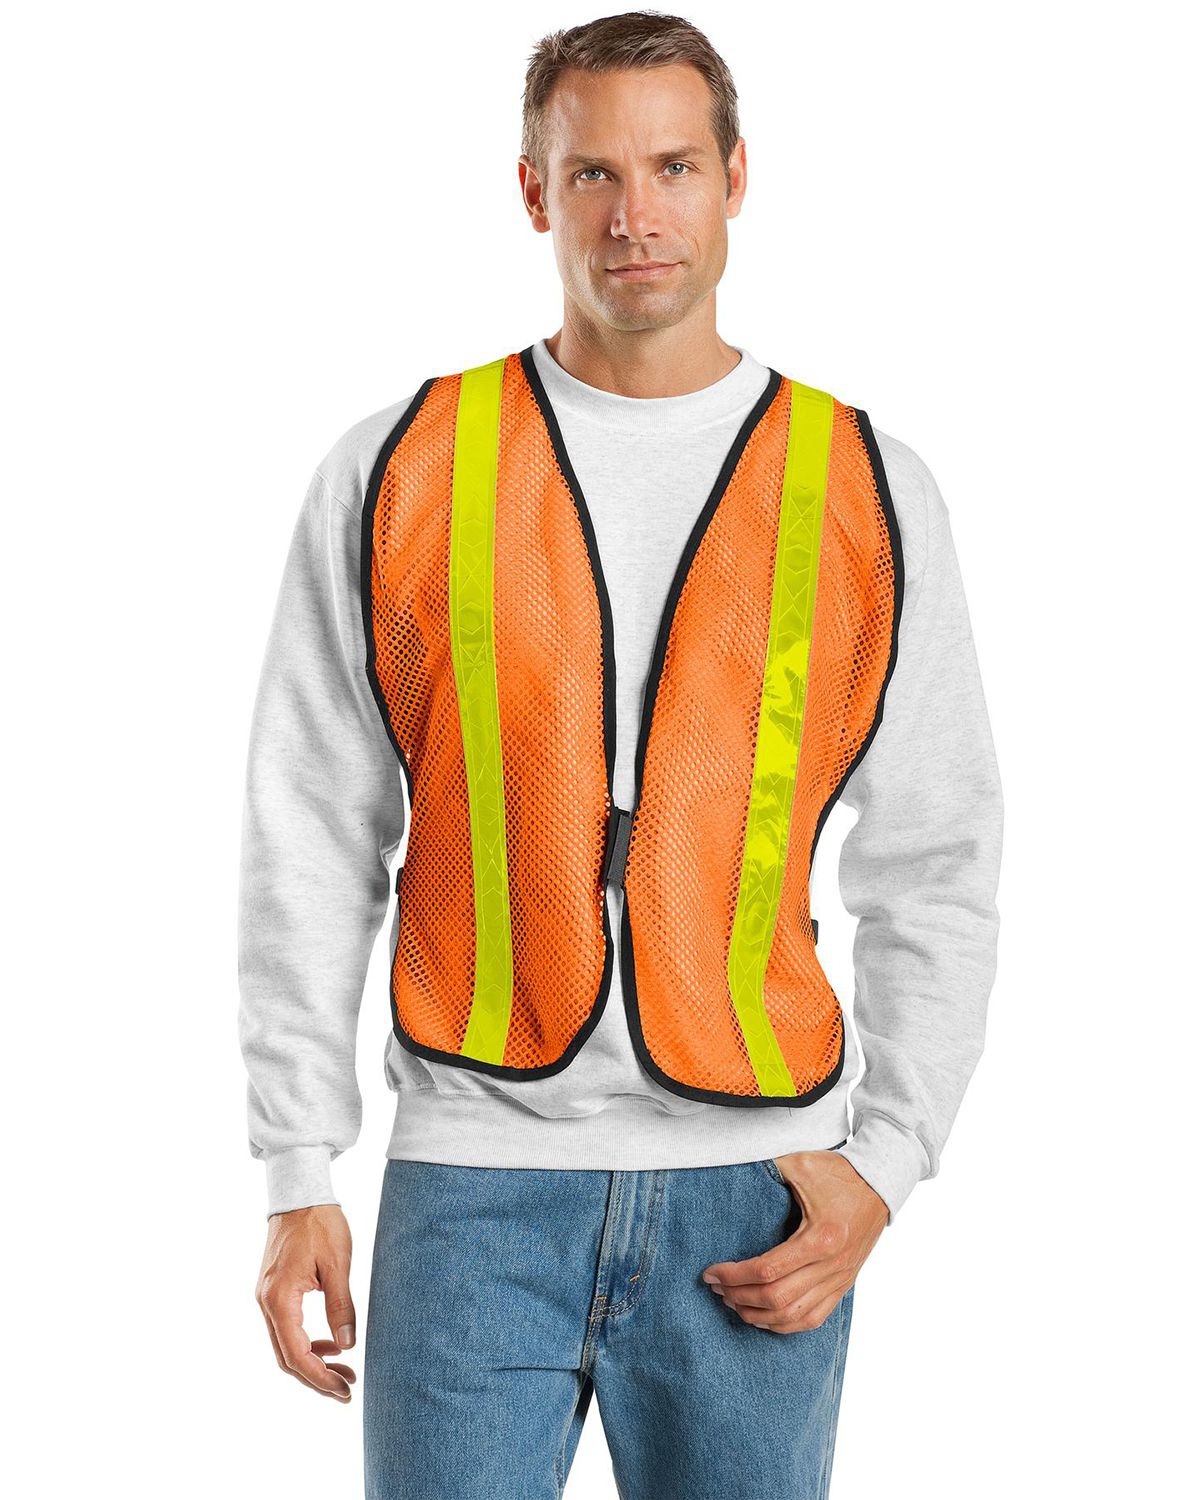 'Port Authority SV02 Mesh Safety Vest'